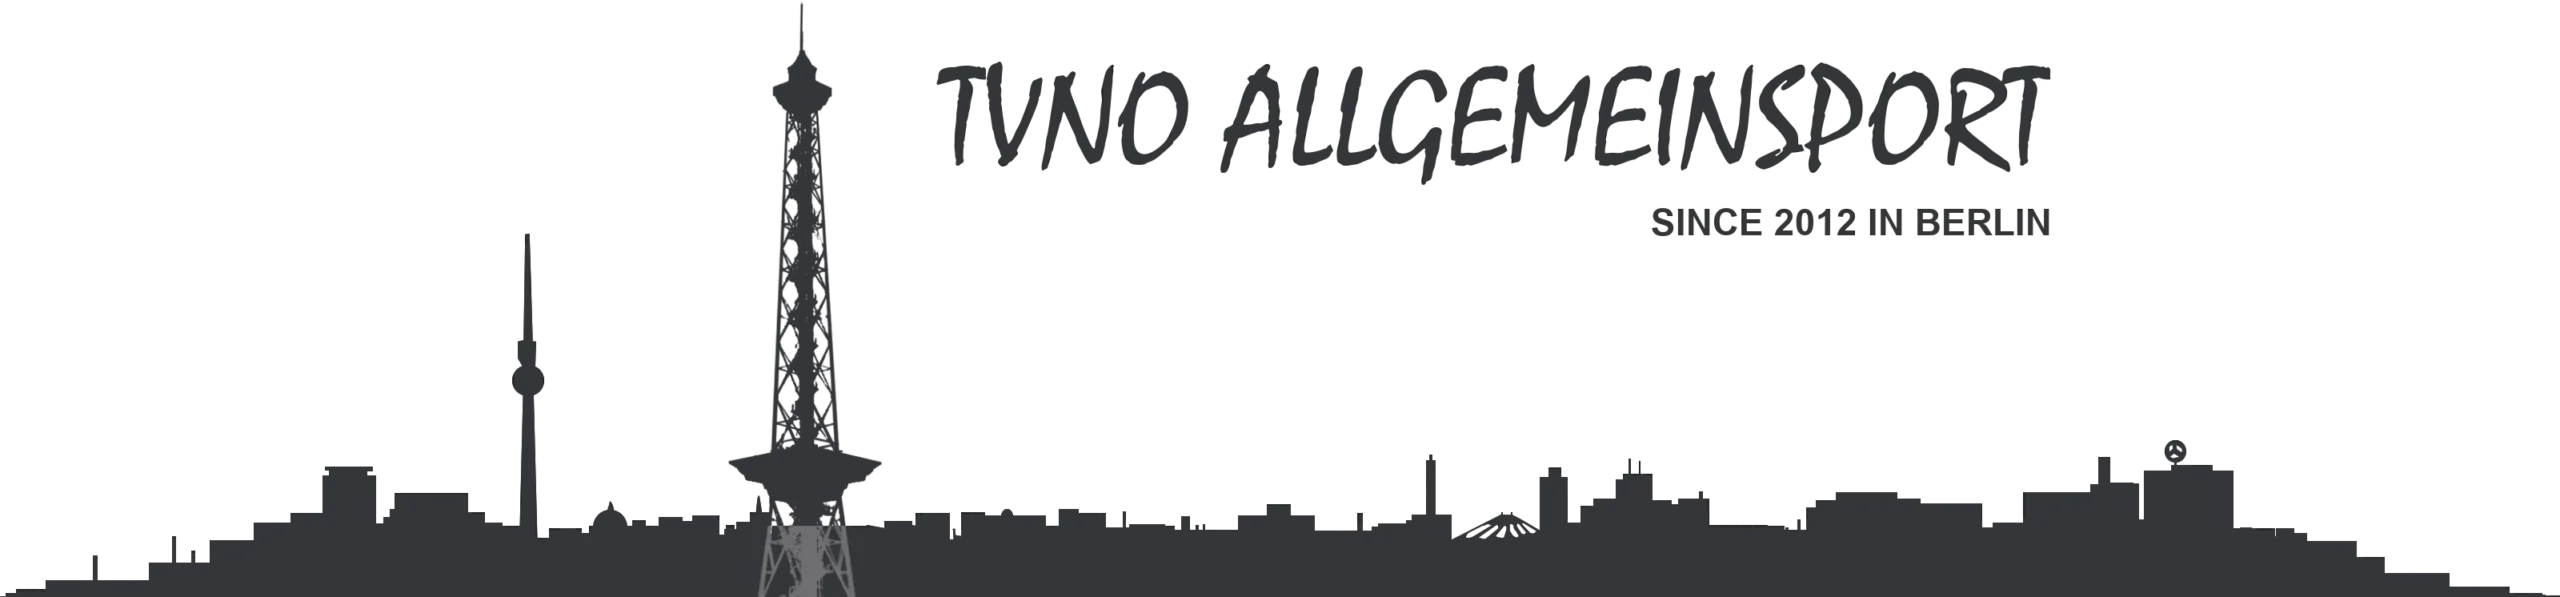 Allgemeinsport beim TVNO Logo